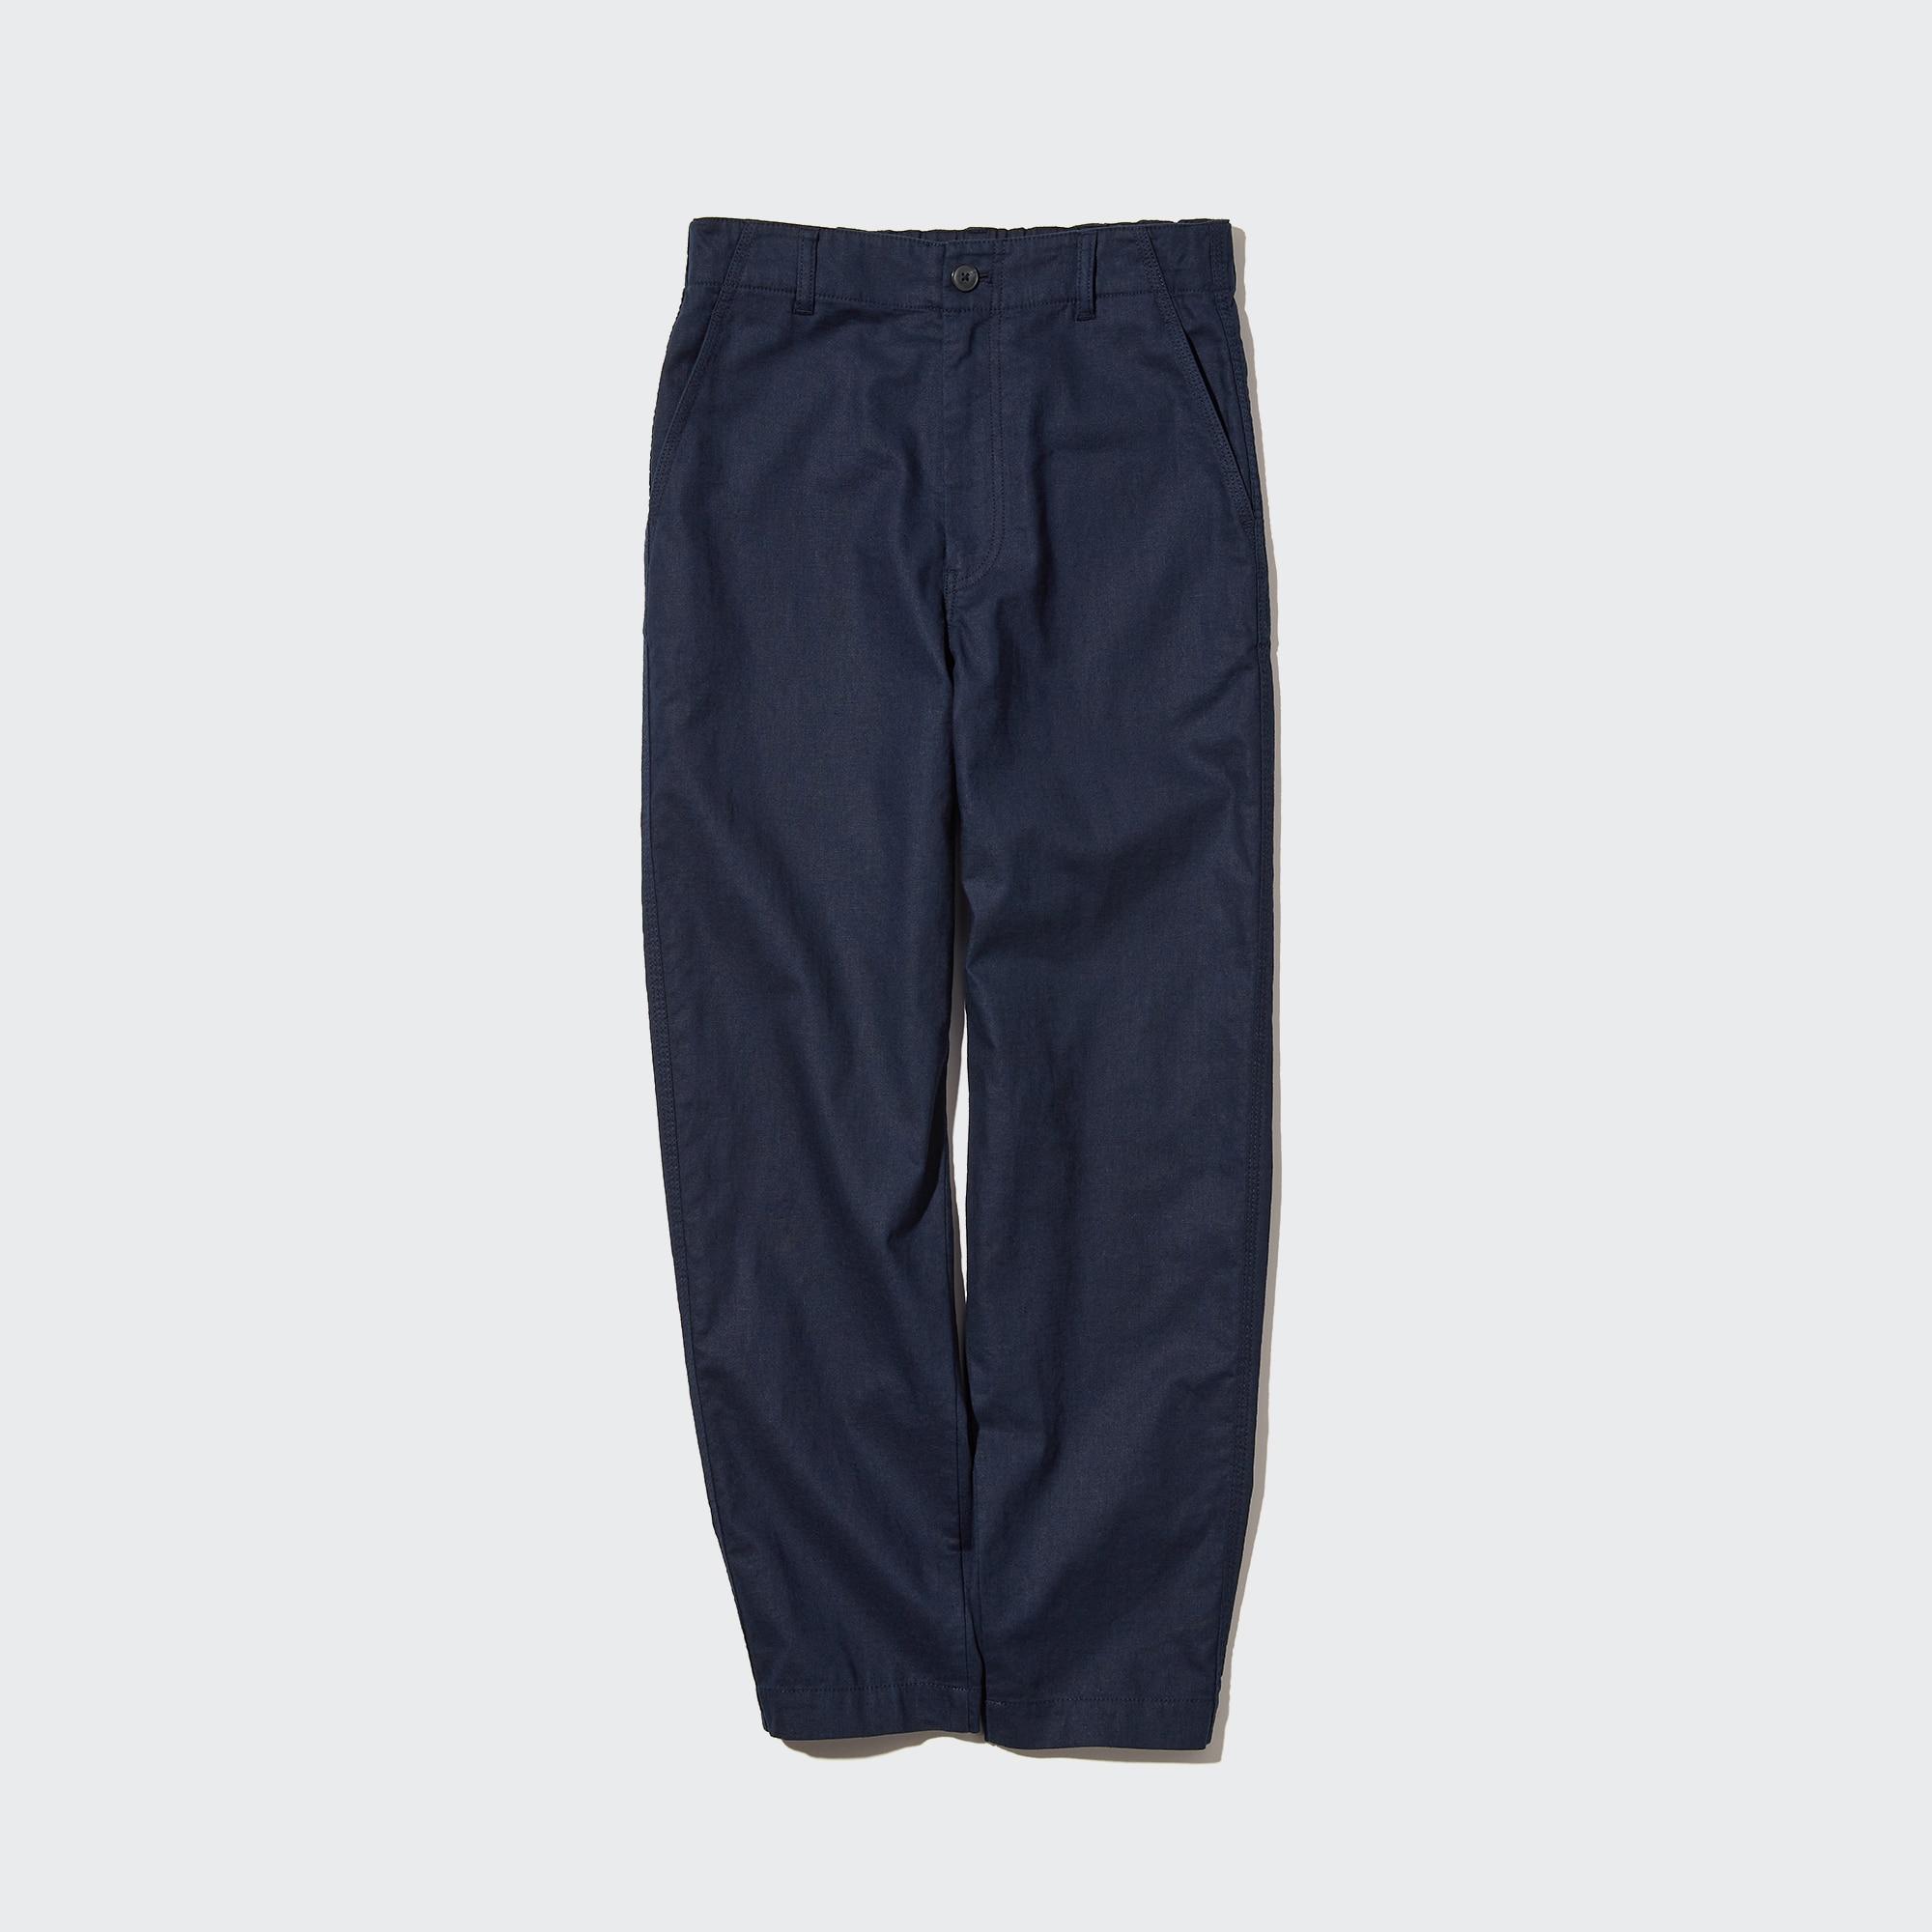 JW Anderson Uniqlo Pants Womens XS Linen Blend Wide Leg Belted Navy Blue  Crop | eBay